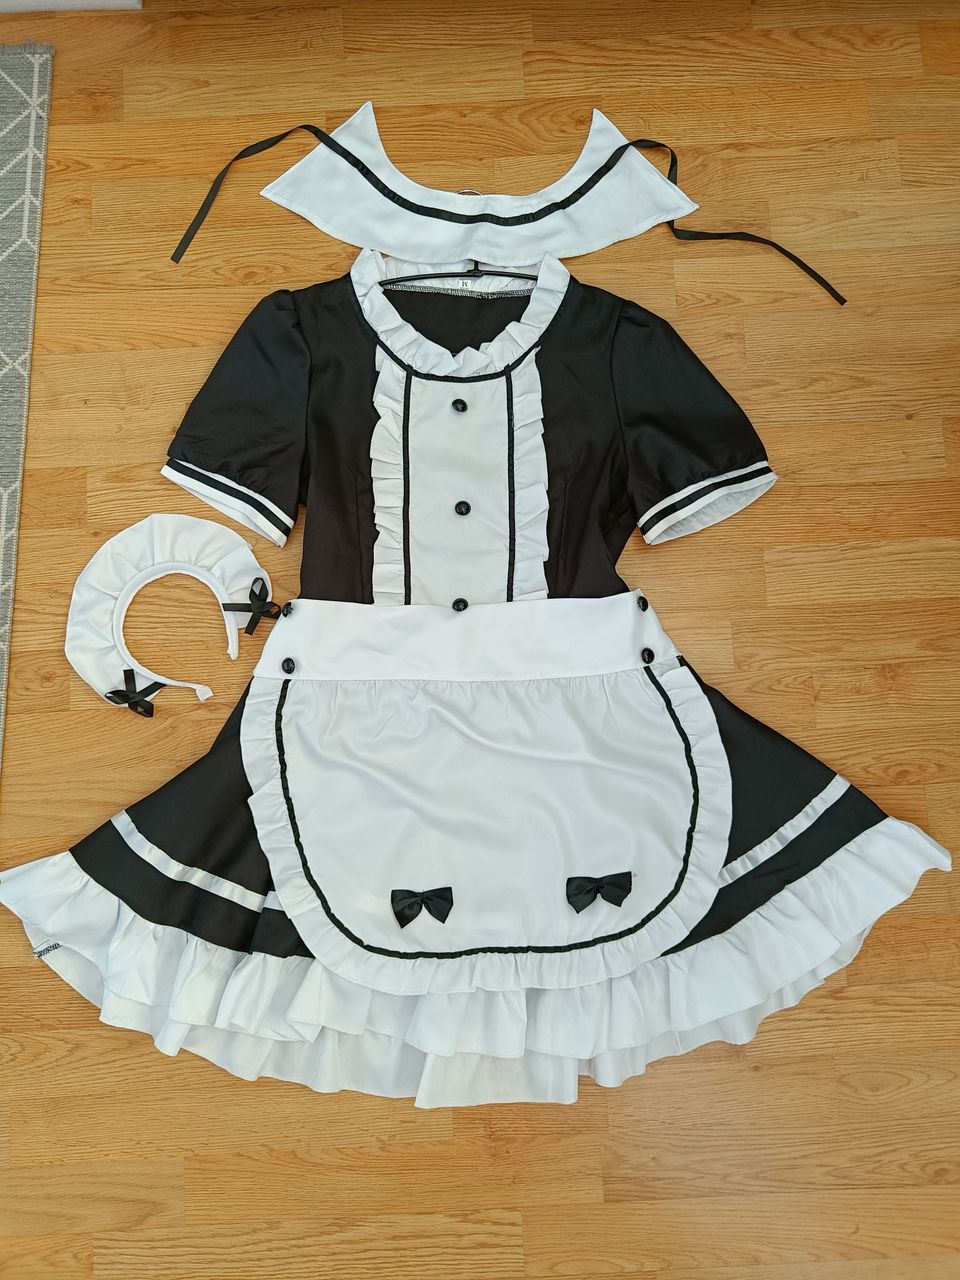 Kissa maid asu cosplay